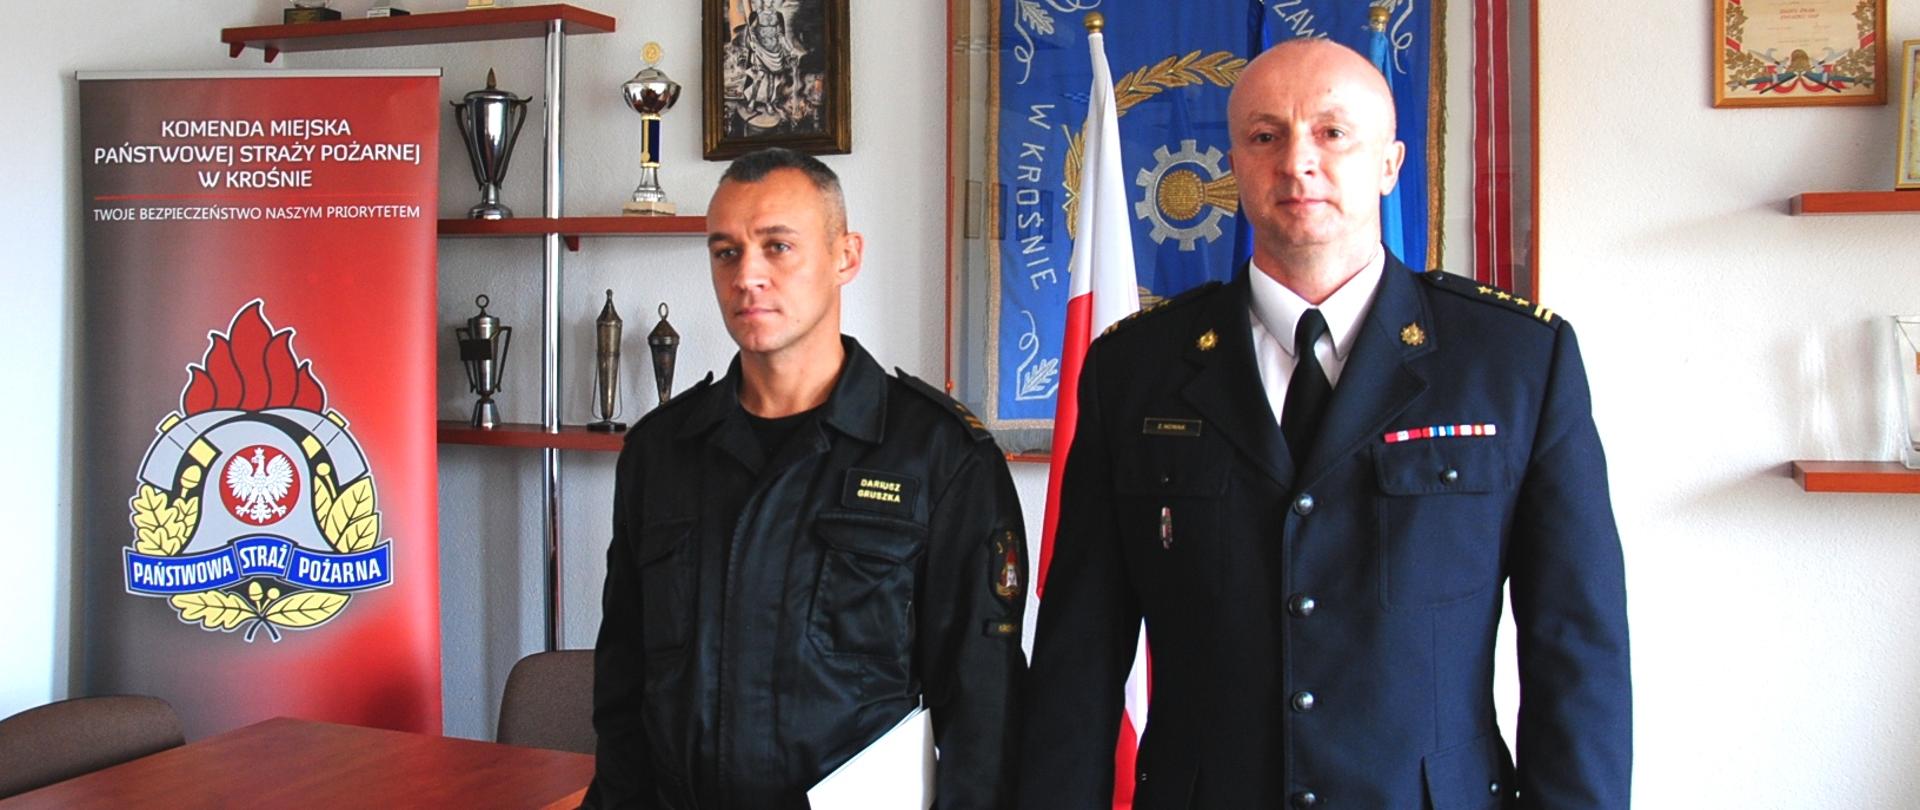 Zdjęcie przedstawia 2 oficerów Państwowej Straży Pożarnej stojących obok siebie w pomieszczeniu świetlicy. W tle, po lewej stronie fotografii widoczny jest czerwony rollup z logotypem Państwowej Straży Pożarnej oraz napisem Komenda Miejska Państwowej Straży Pożarnej w Krośnie. Strażak stojący po prawej stronie ubrany jest w mundur wyjściowy, a strażak po prawej w umundurowanie dowódczo – sztabowe.